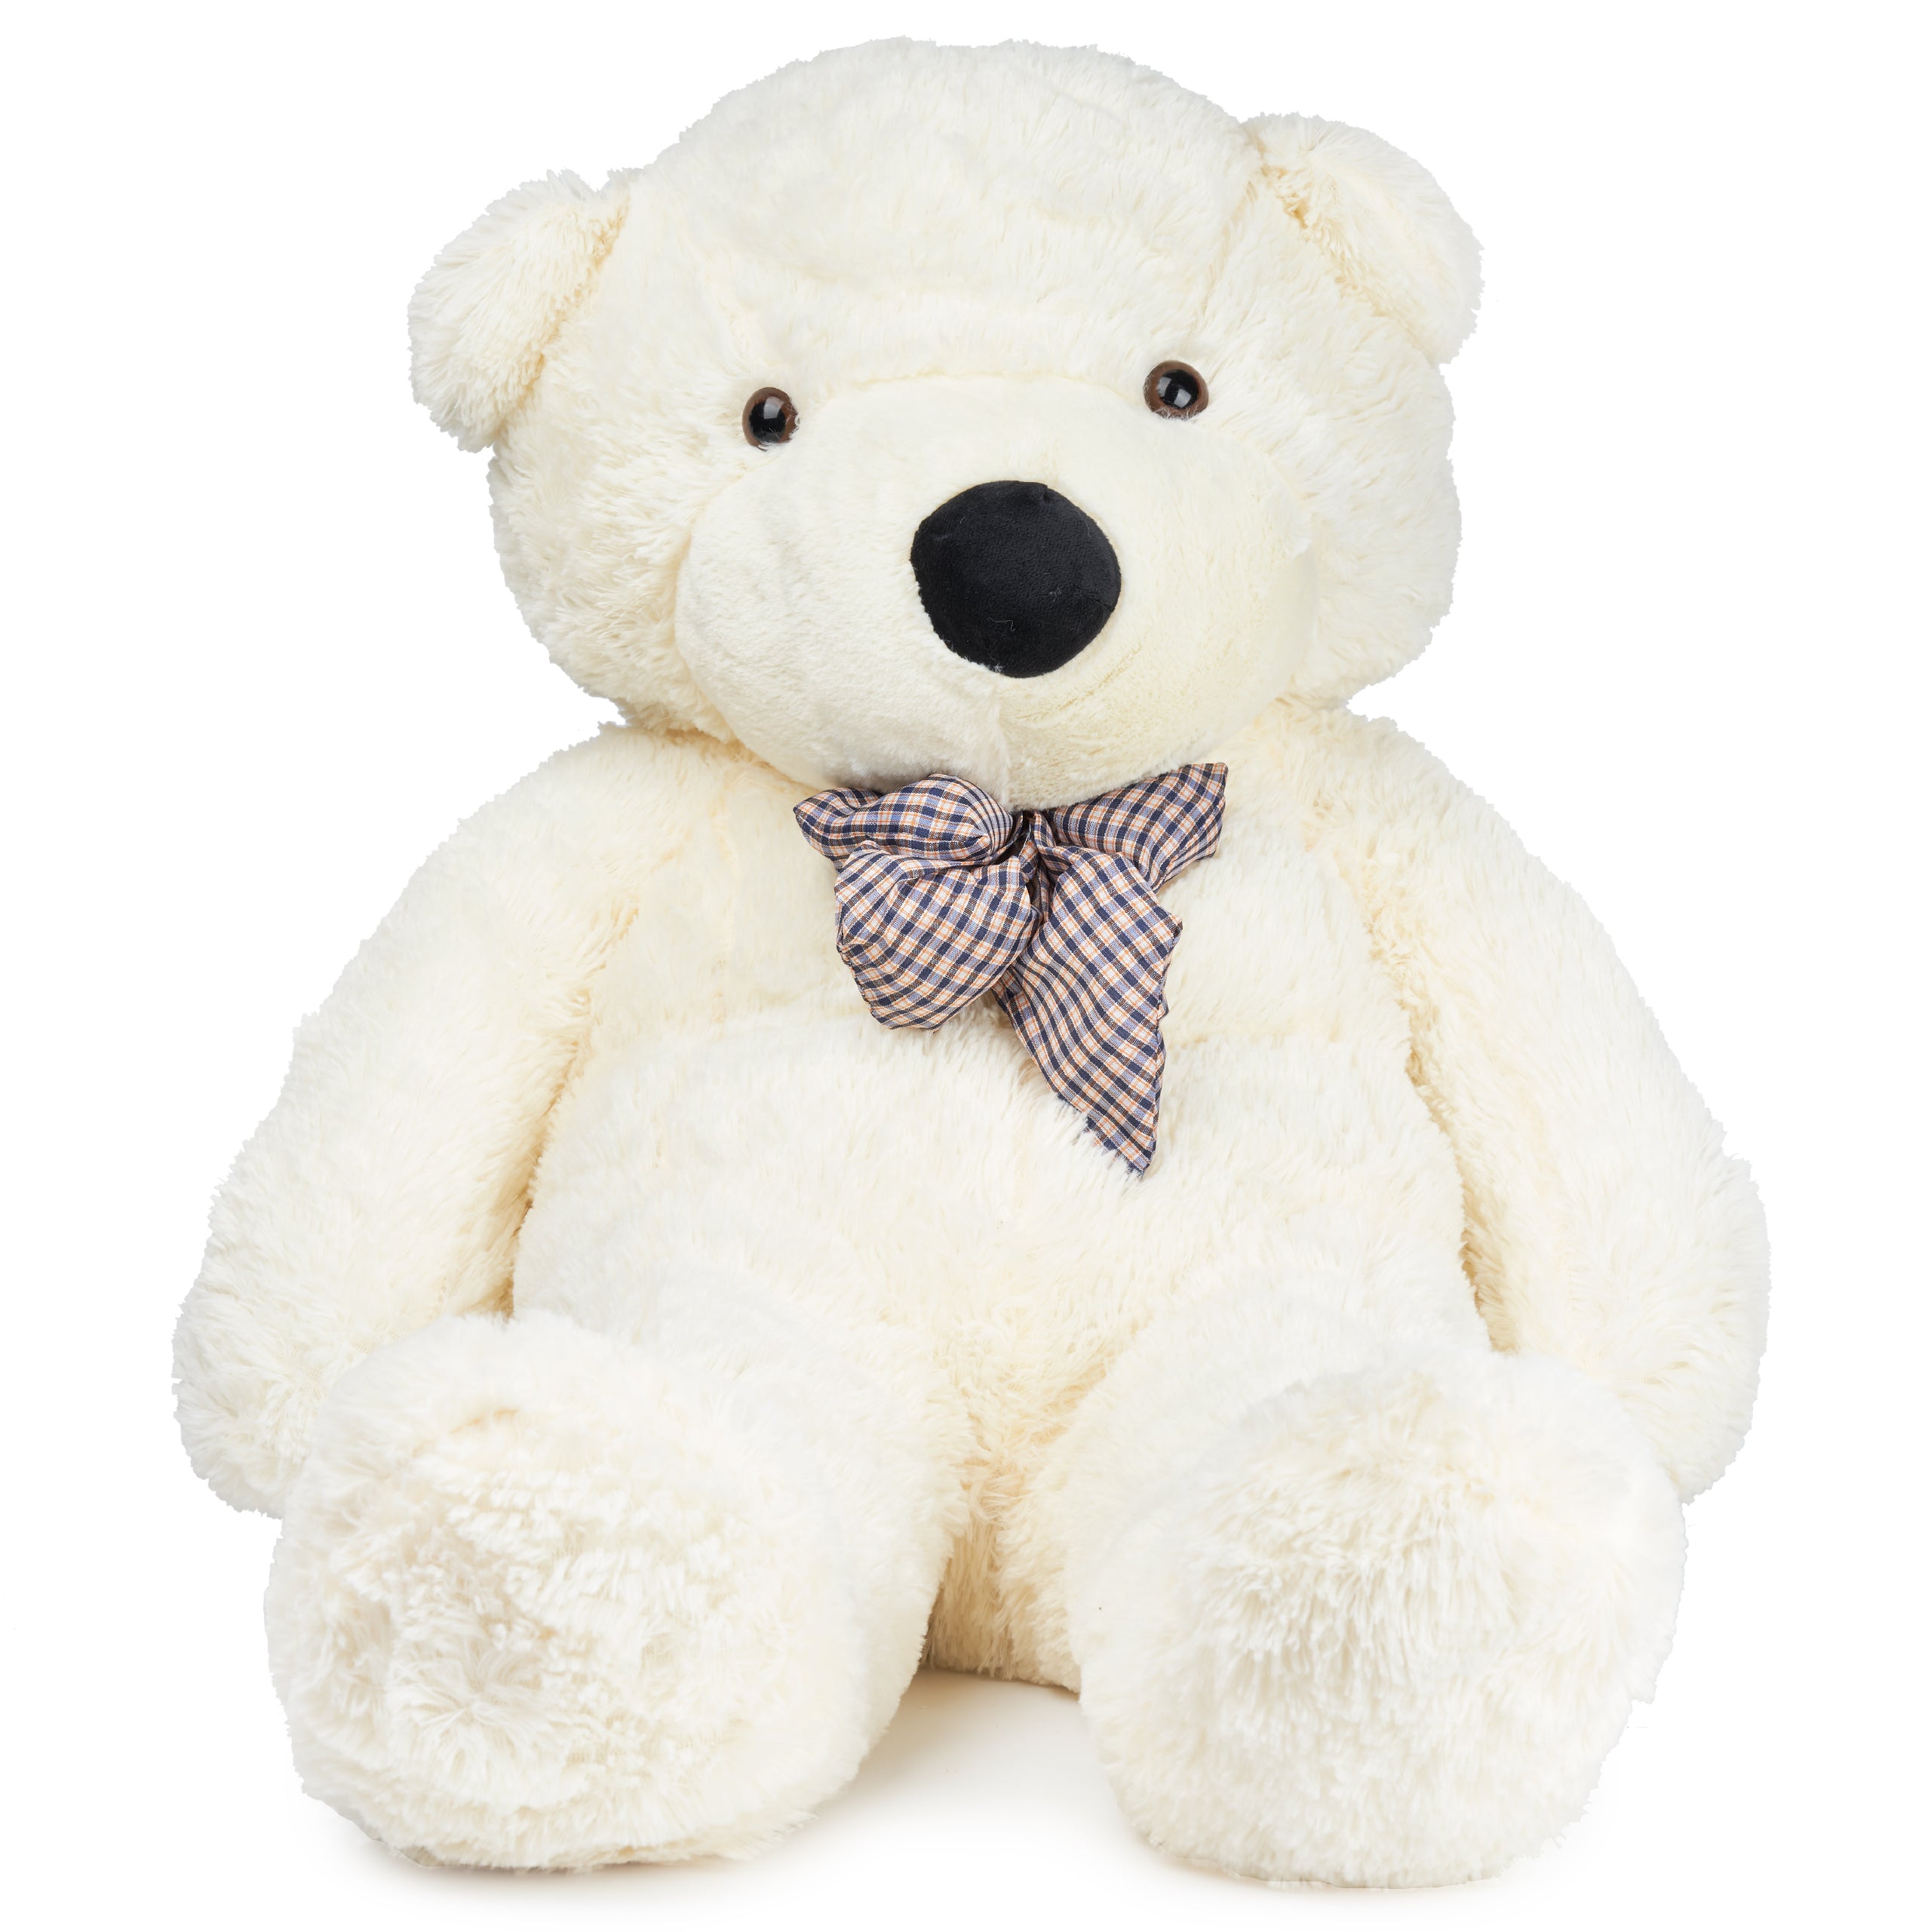 Giant White Plush Teddy Bear